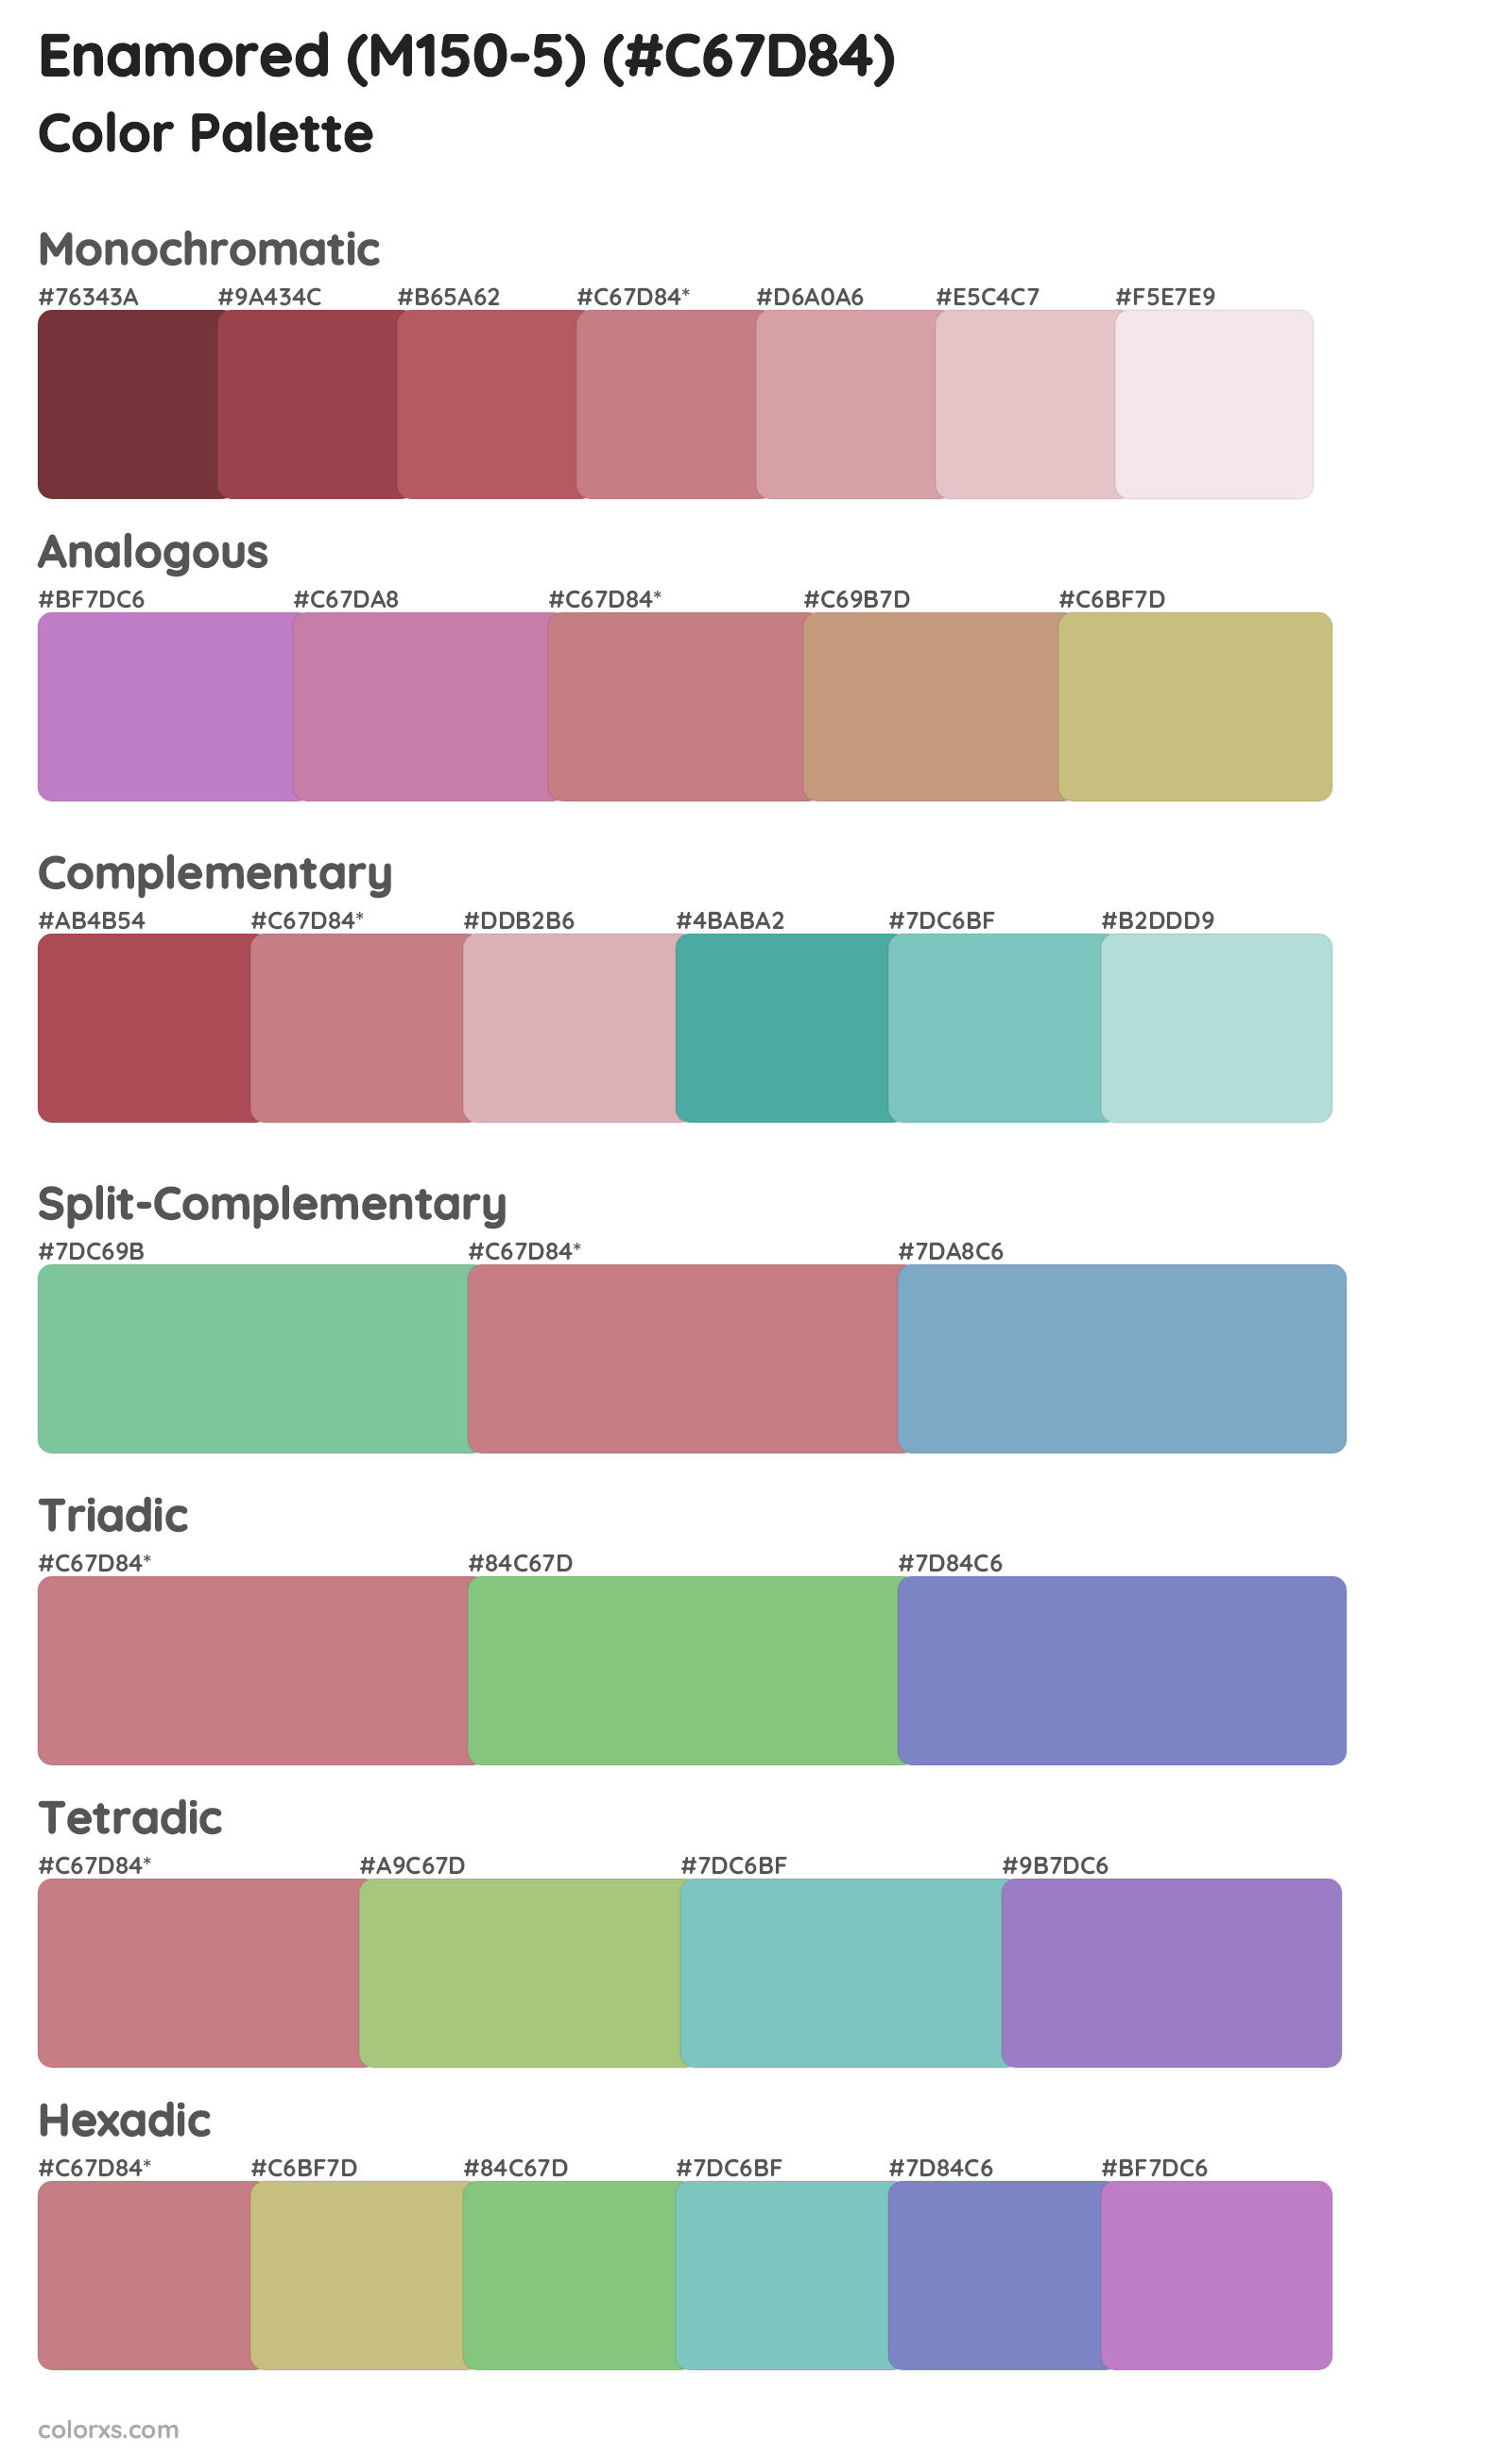 Enamored (M150-5) Color Scheme Palettes